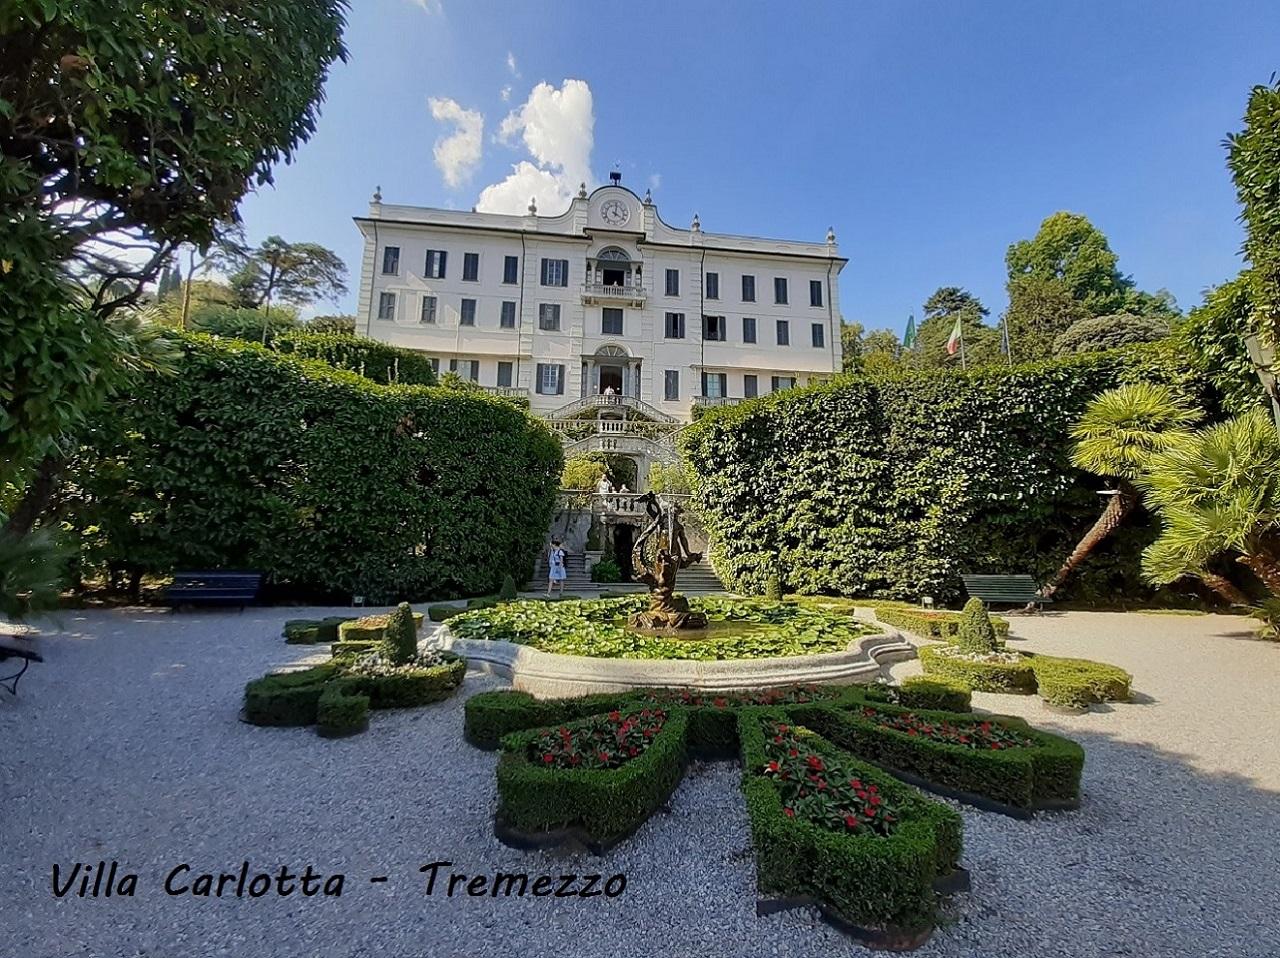 Villa carlotta tremezzo